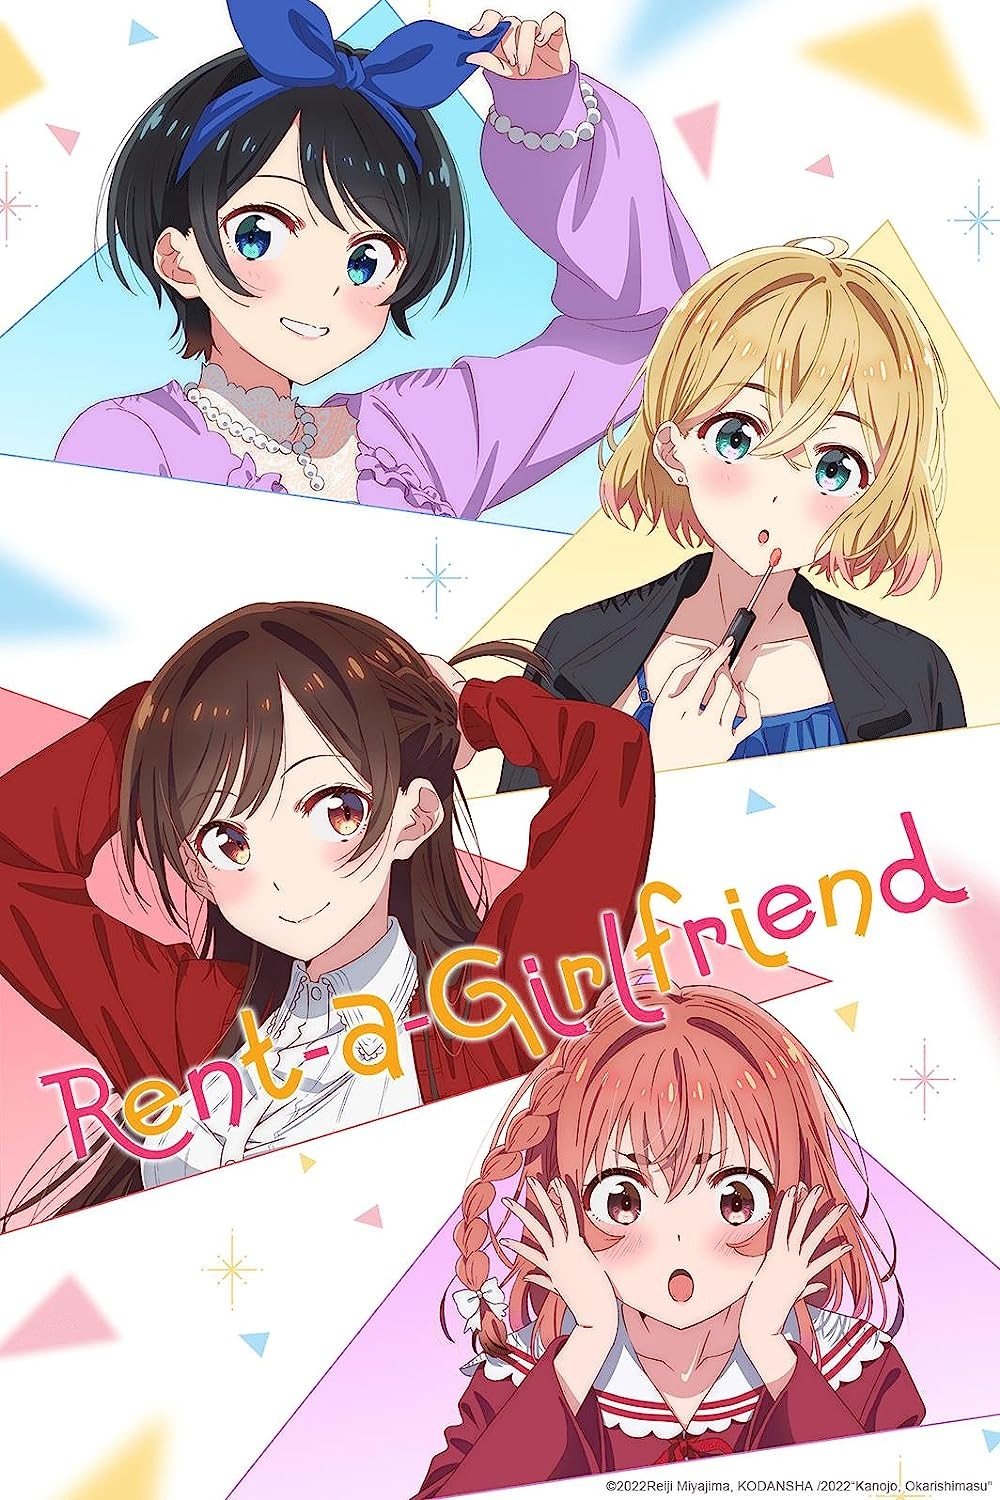 Rent a Girlfriend: A personagem mais injustiçada – Mundo dos Animes